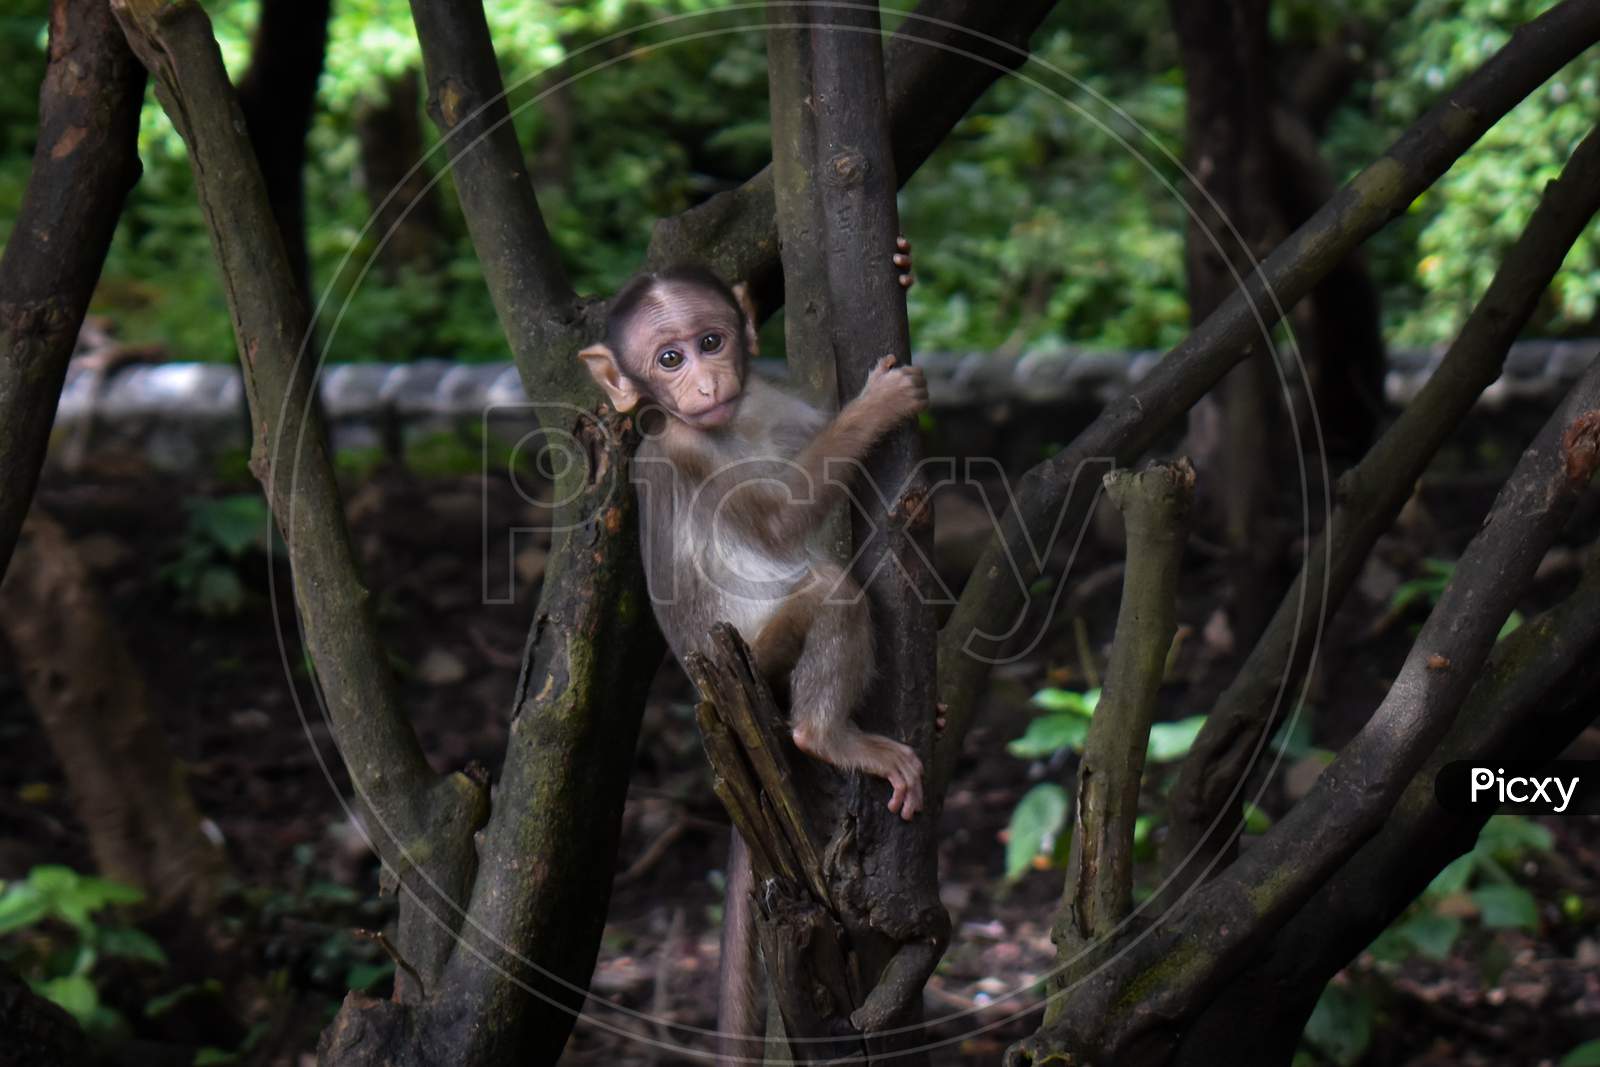 Little Monkey on a tree